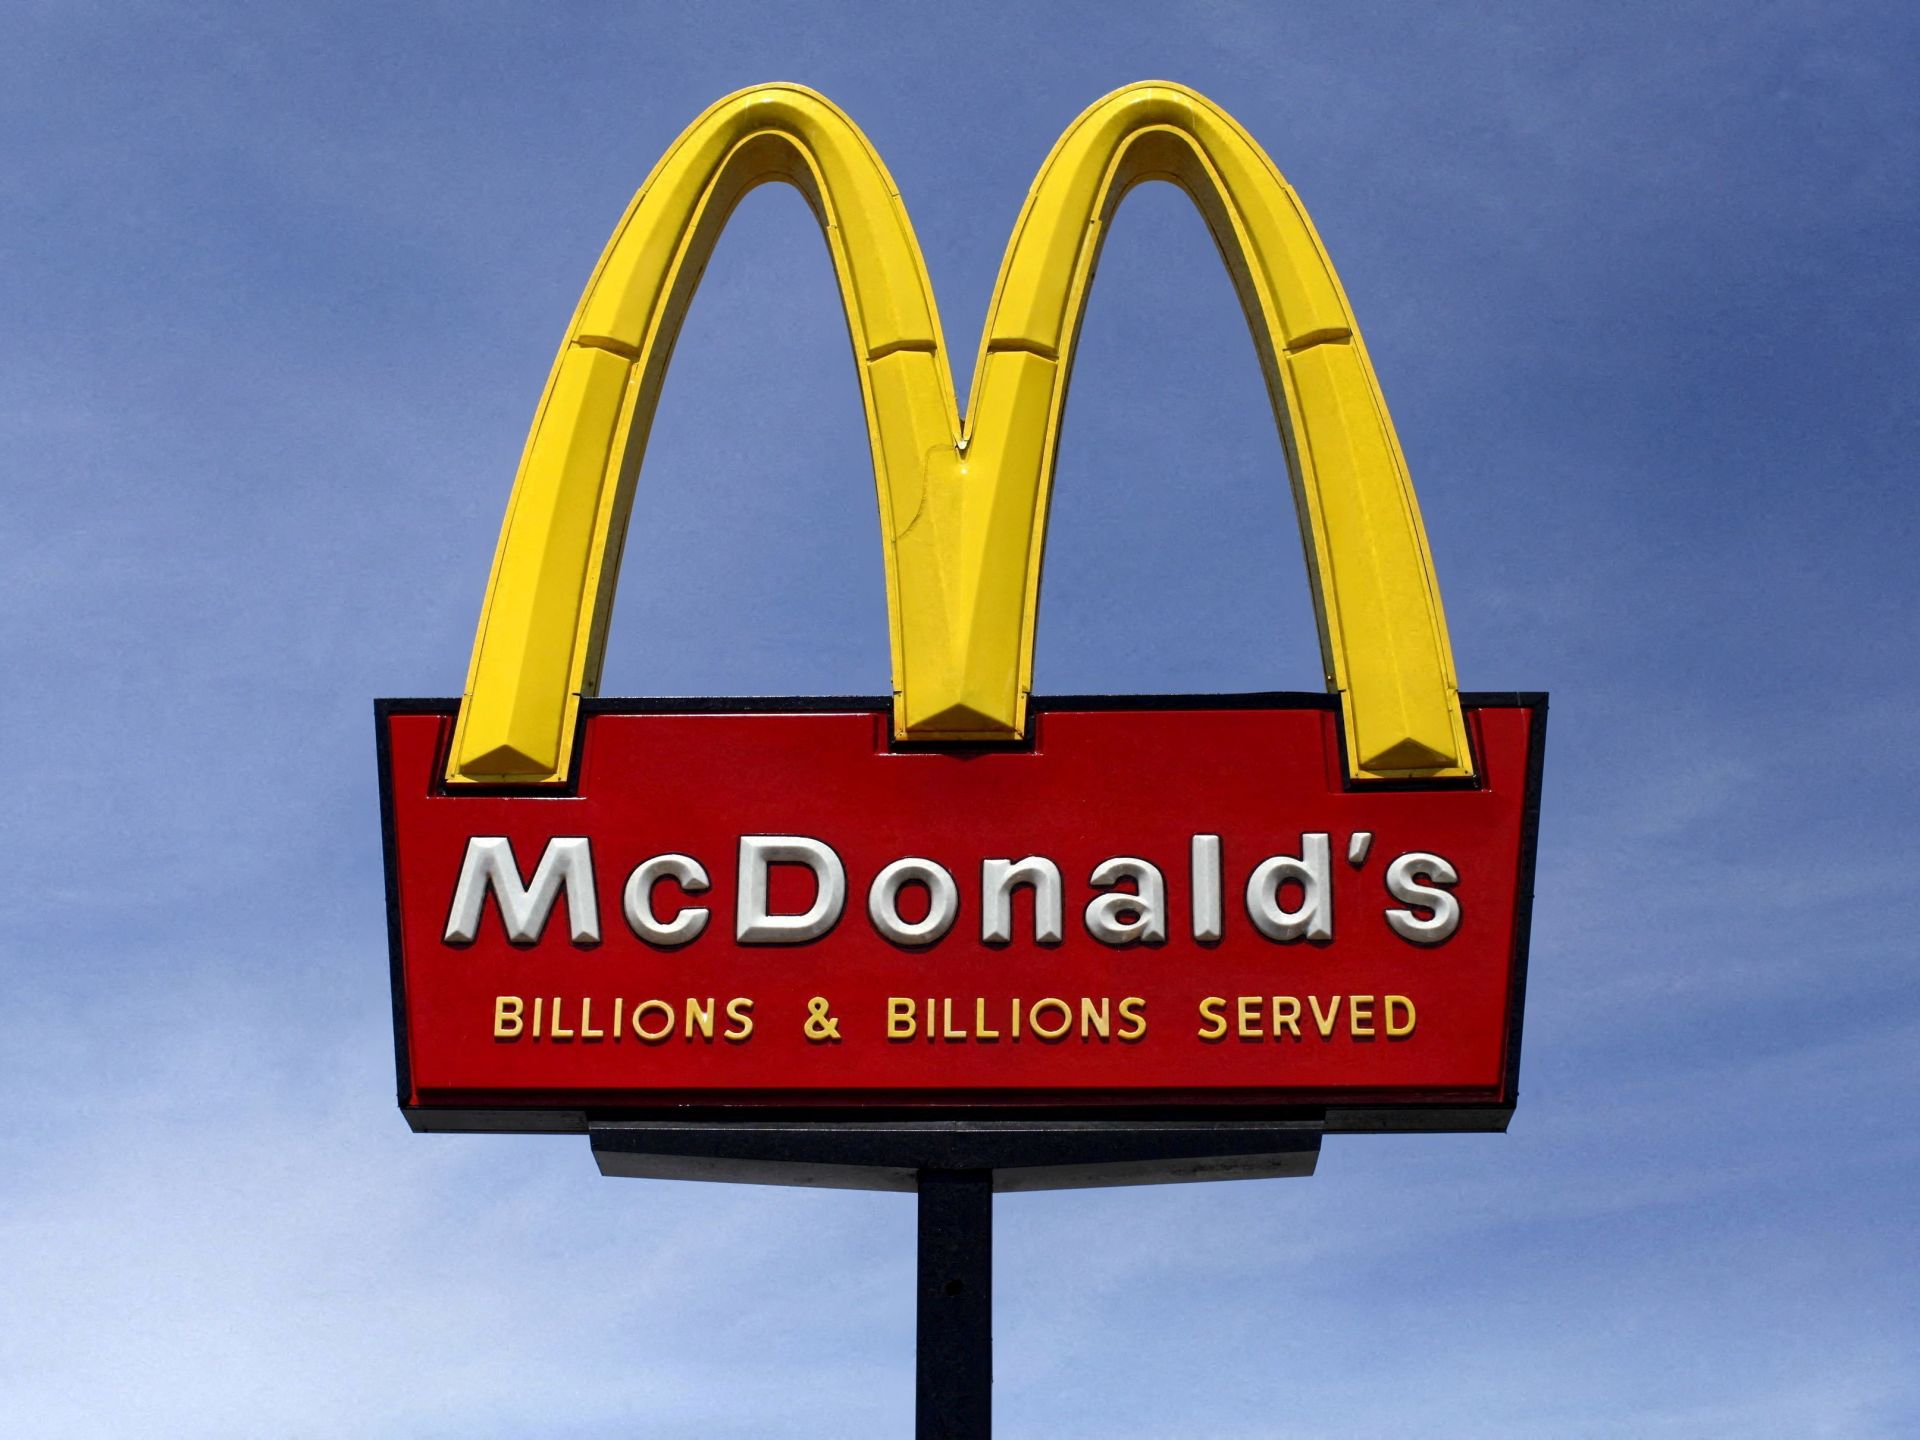 McDonald's compra los 225 restaurantes franquiciados israelíes tras el boicot |  Noticias de la guerra israelí en Gaza